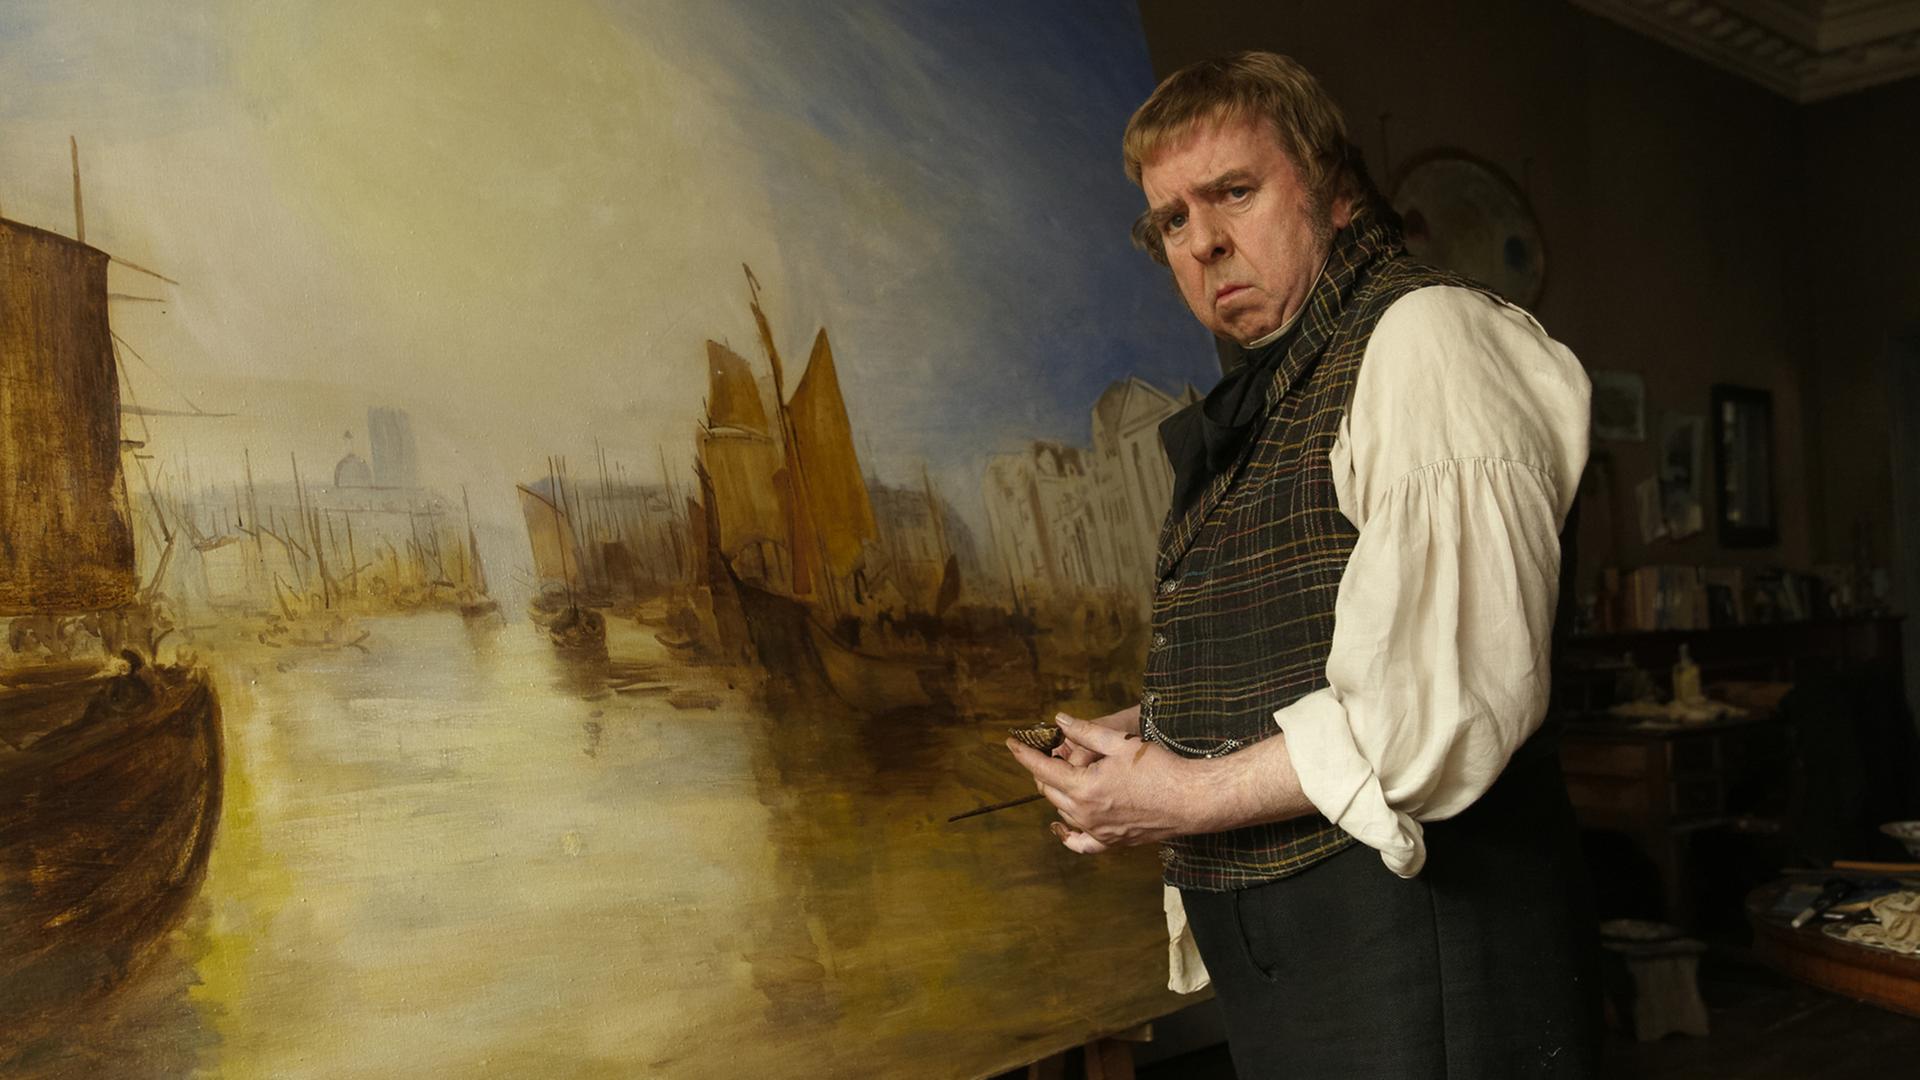 Timothy Spall als der Maler William Turner in dem Film "Mr. Turner - Meister des Lichts".